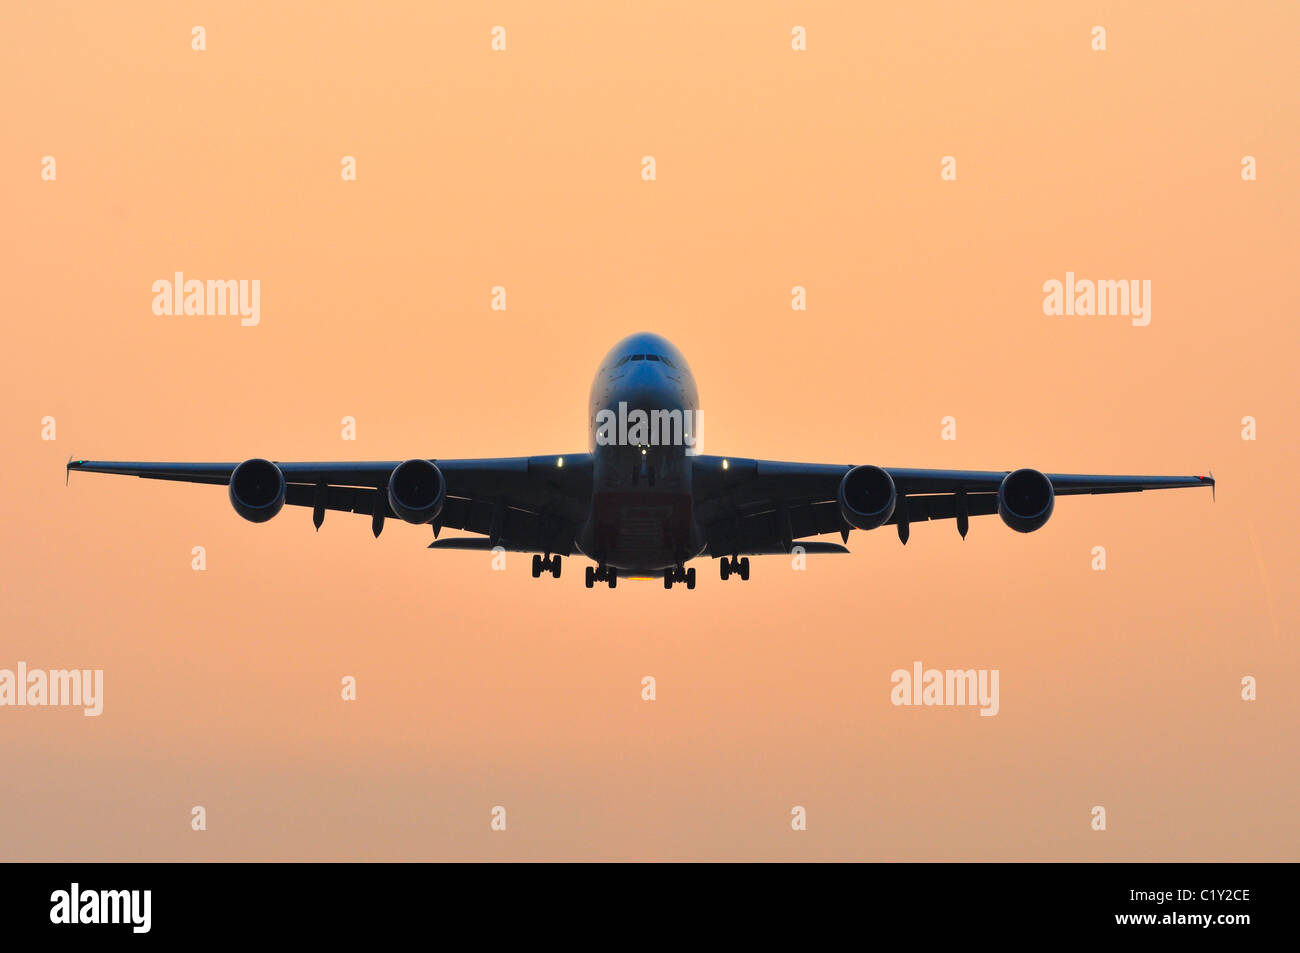 Avion Airbus A380 entrée en terre pendant le coucher du soleil à l'aéroport d'Heathrow Banque D'Images